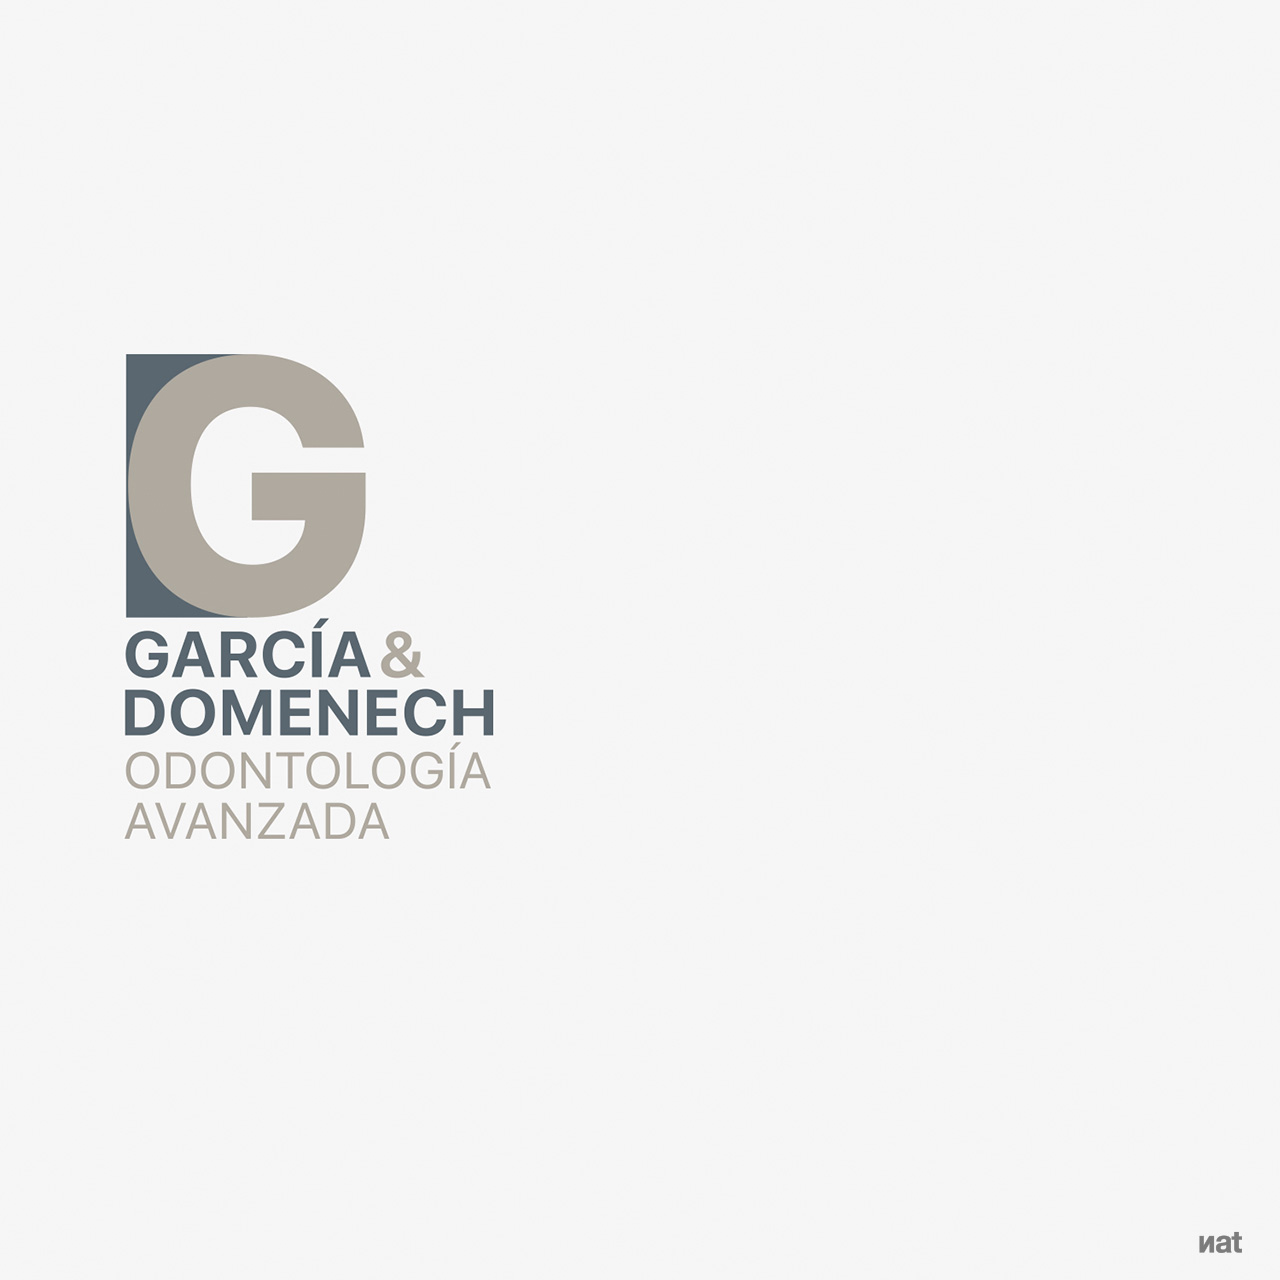 Proyecto global de identidad corporativa, fotografía y comunicación web desarrollado por Nat Estudi para la clínica dental García & Domenech Odontología Avanzada.